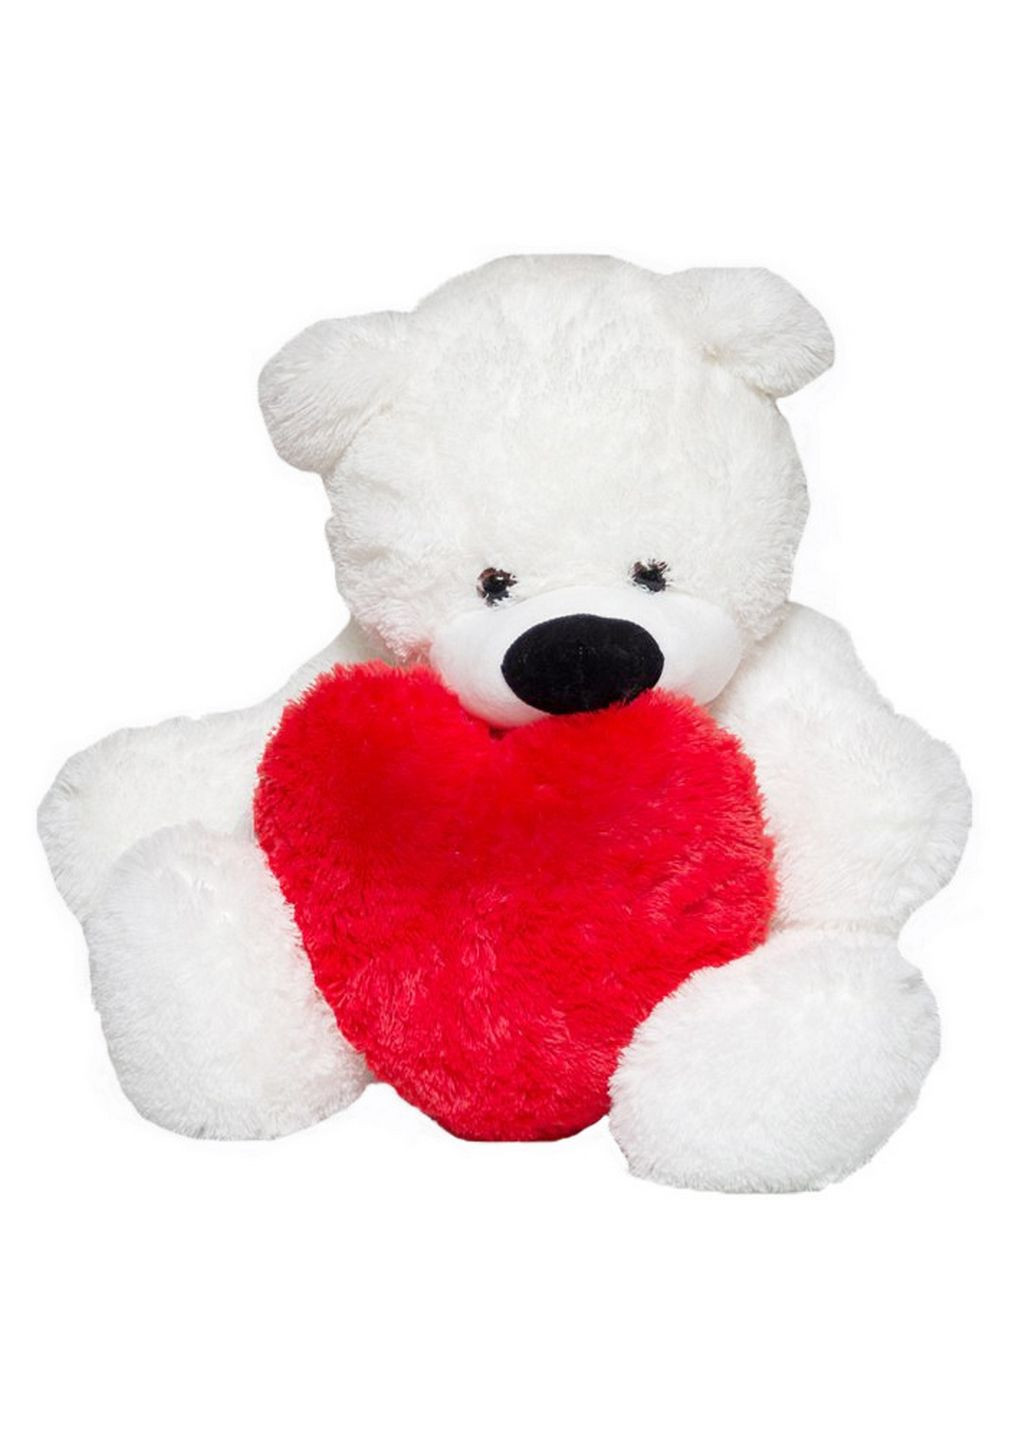 М'яка іграшка білий ведмедик бублик з серцем Алина (282583252)